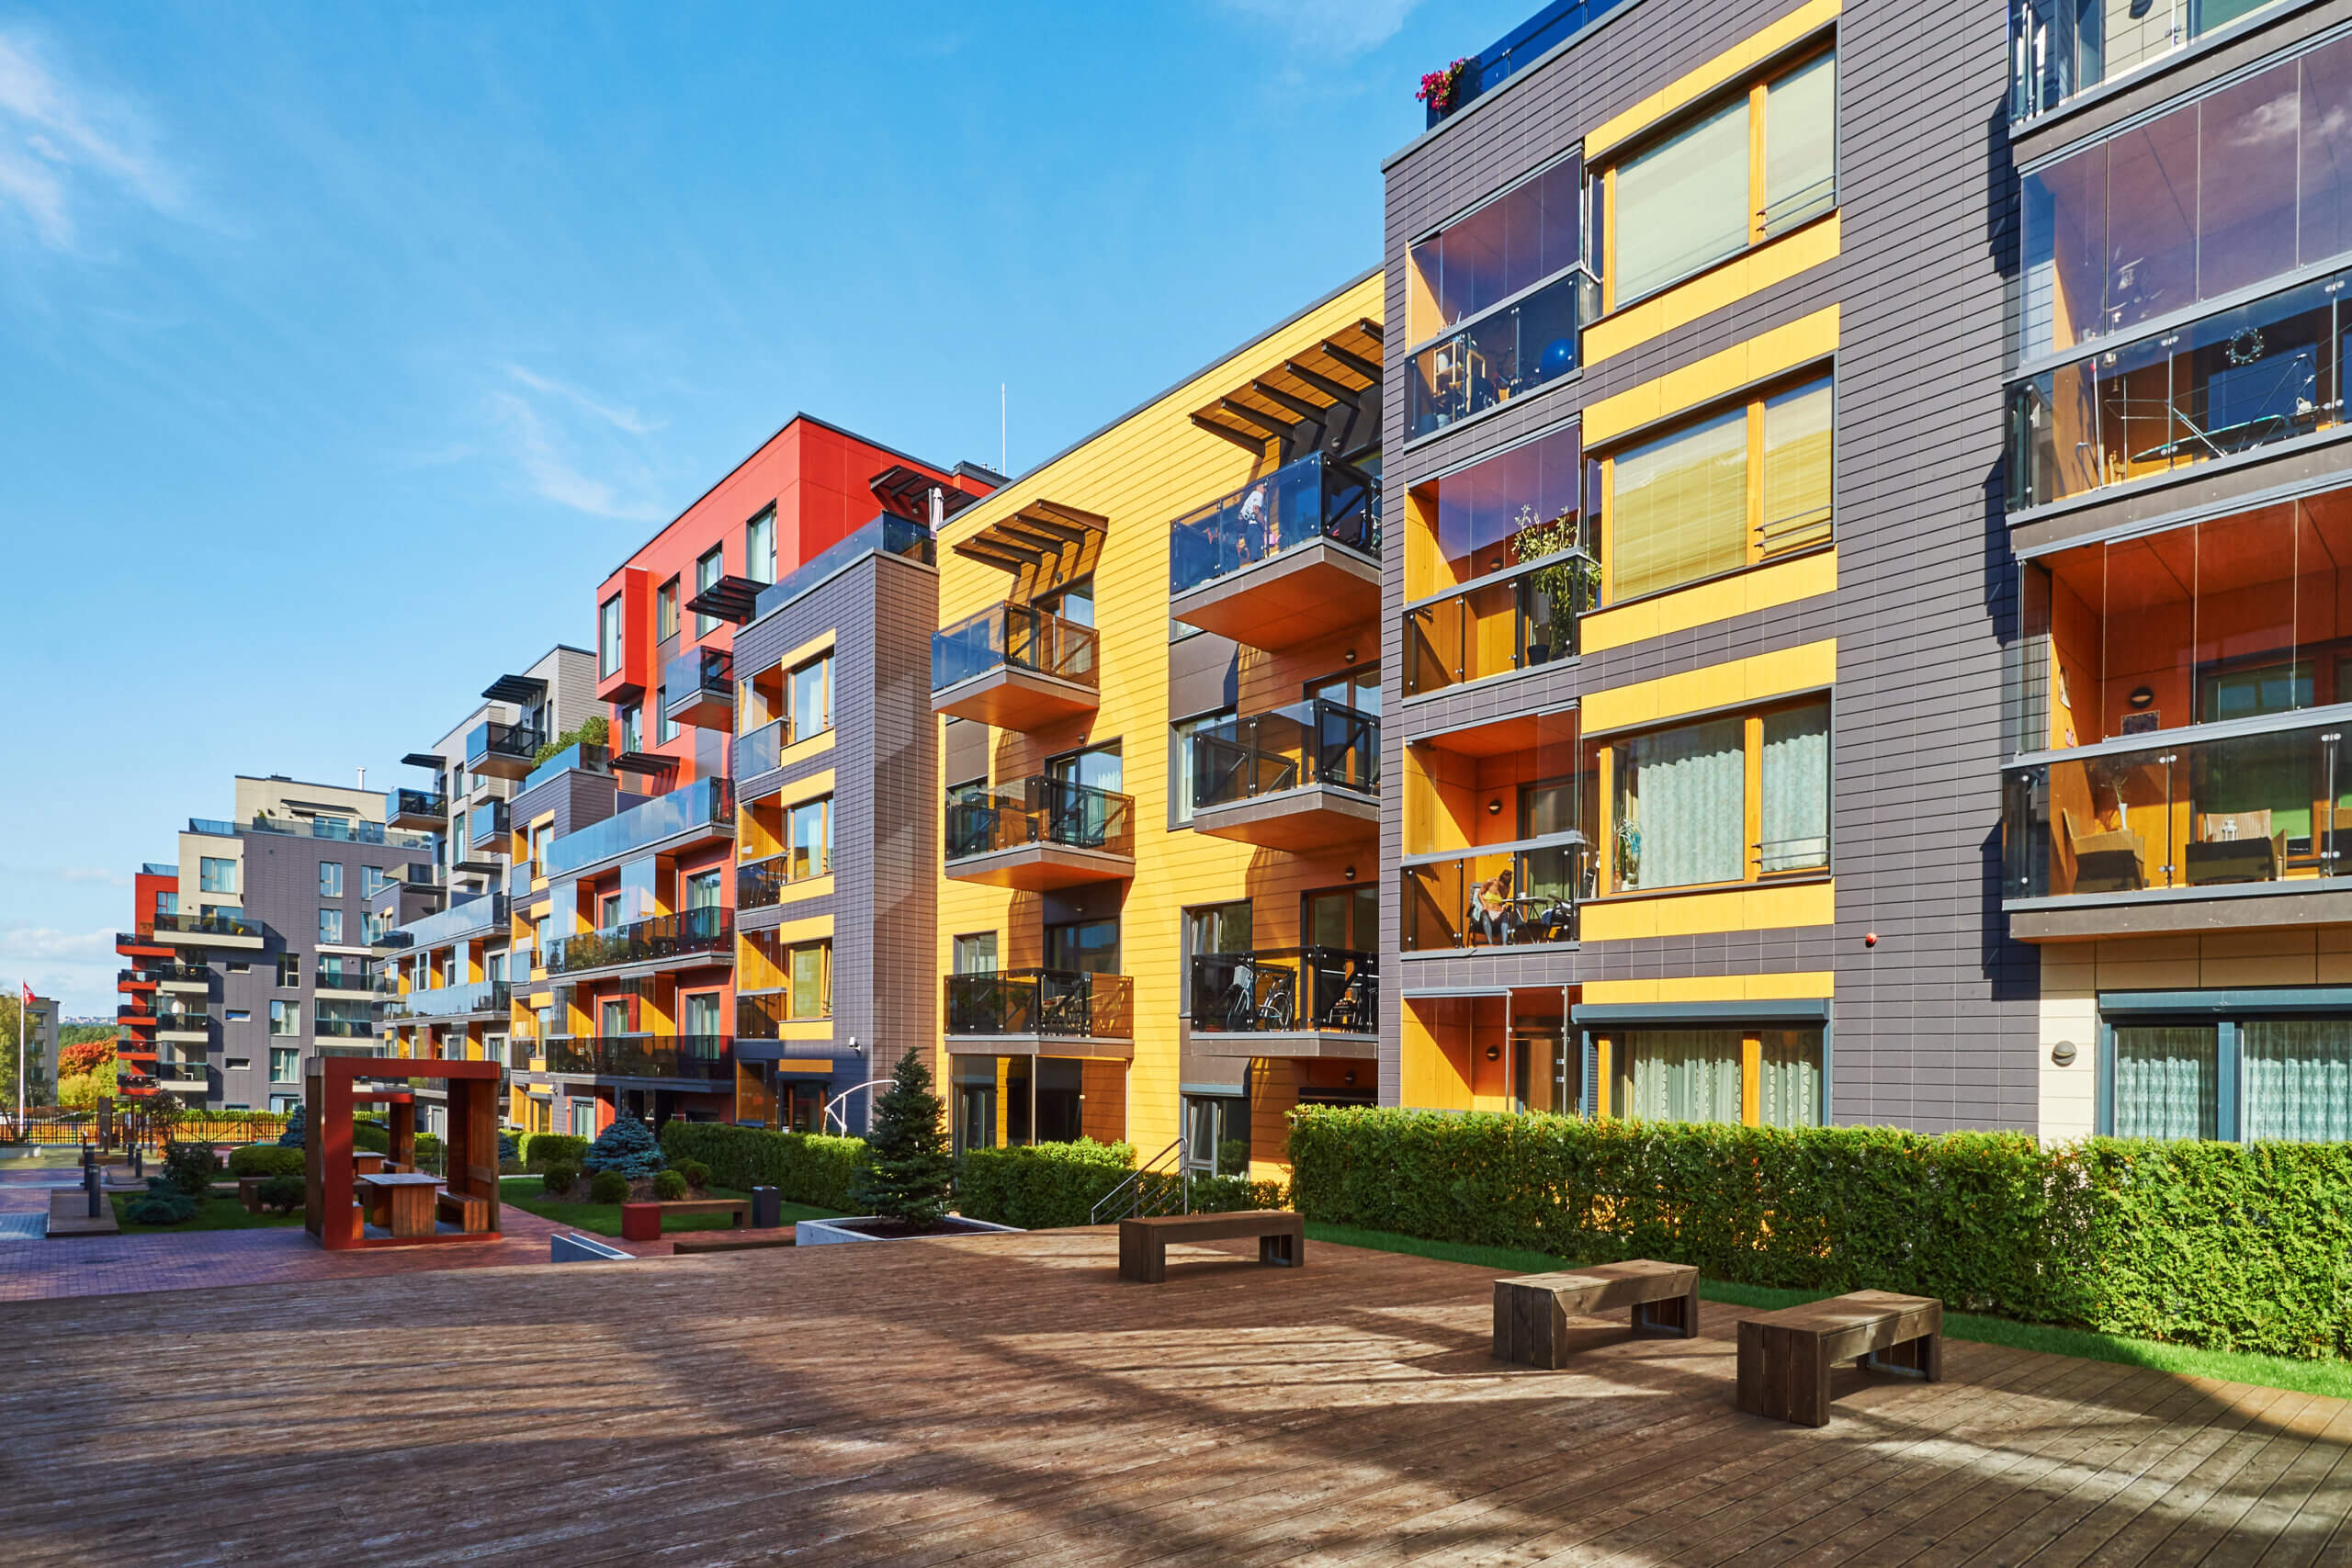 Új építésű lakóparkok, melyekben mindenki megtalálhatja jövőbeni otthonát